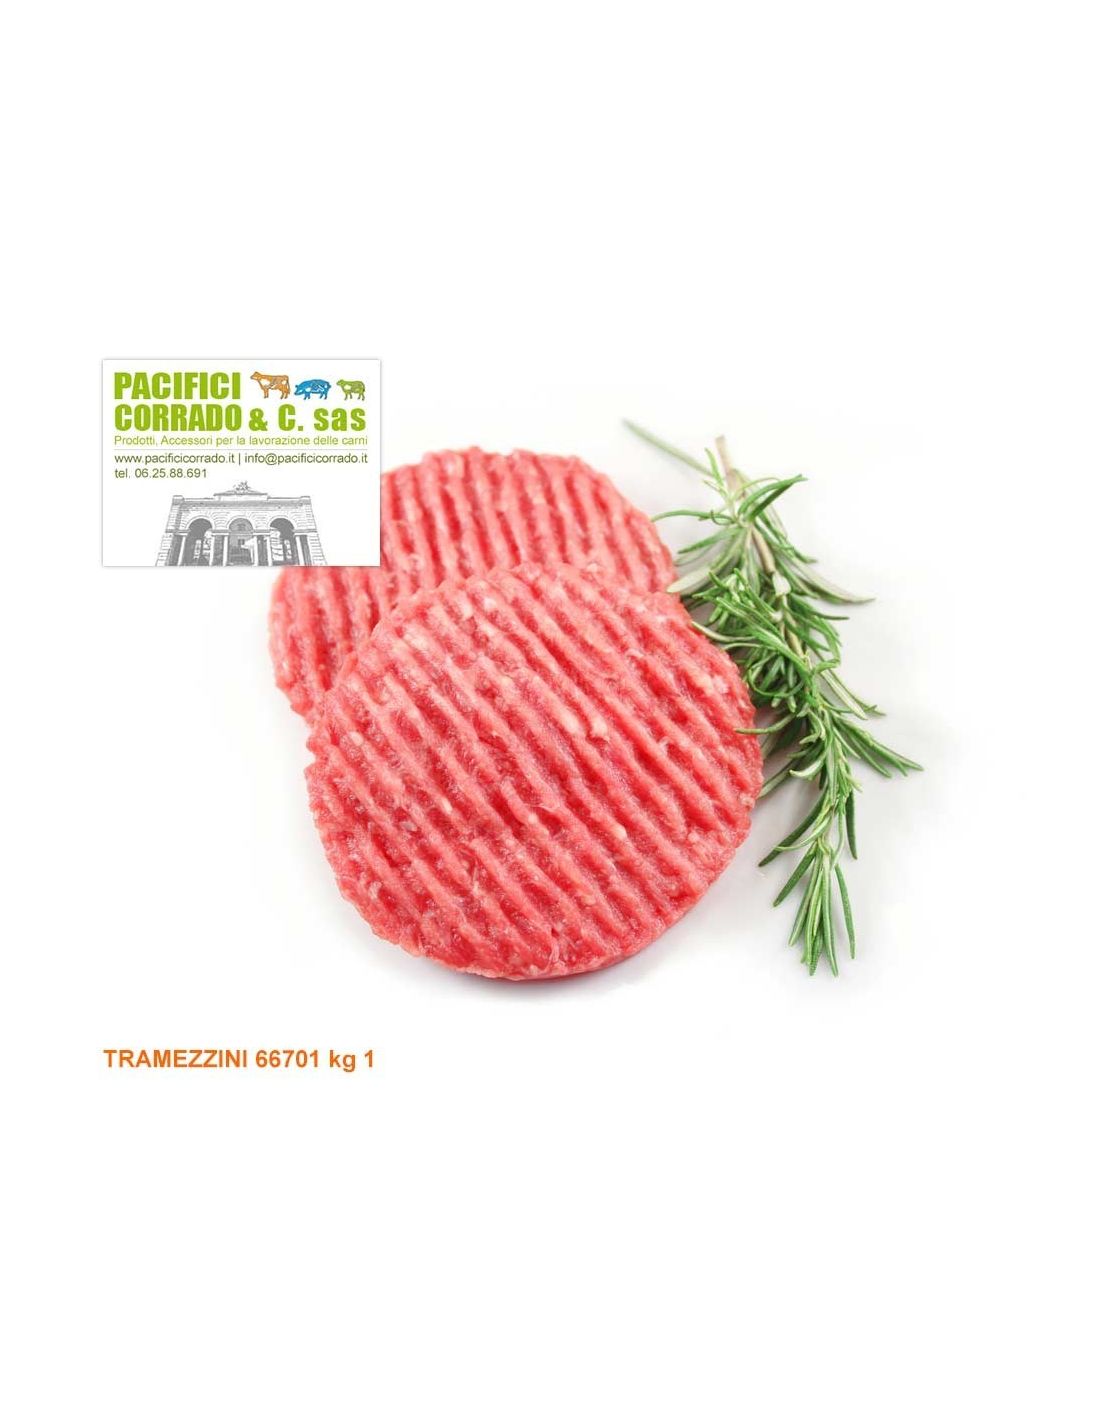 Premix Tramezzini 66701 kg 1 preparati di carne